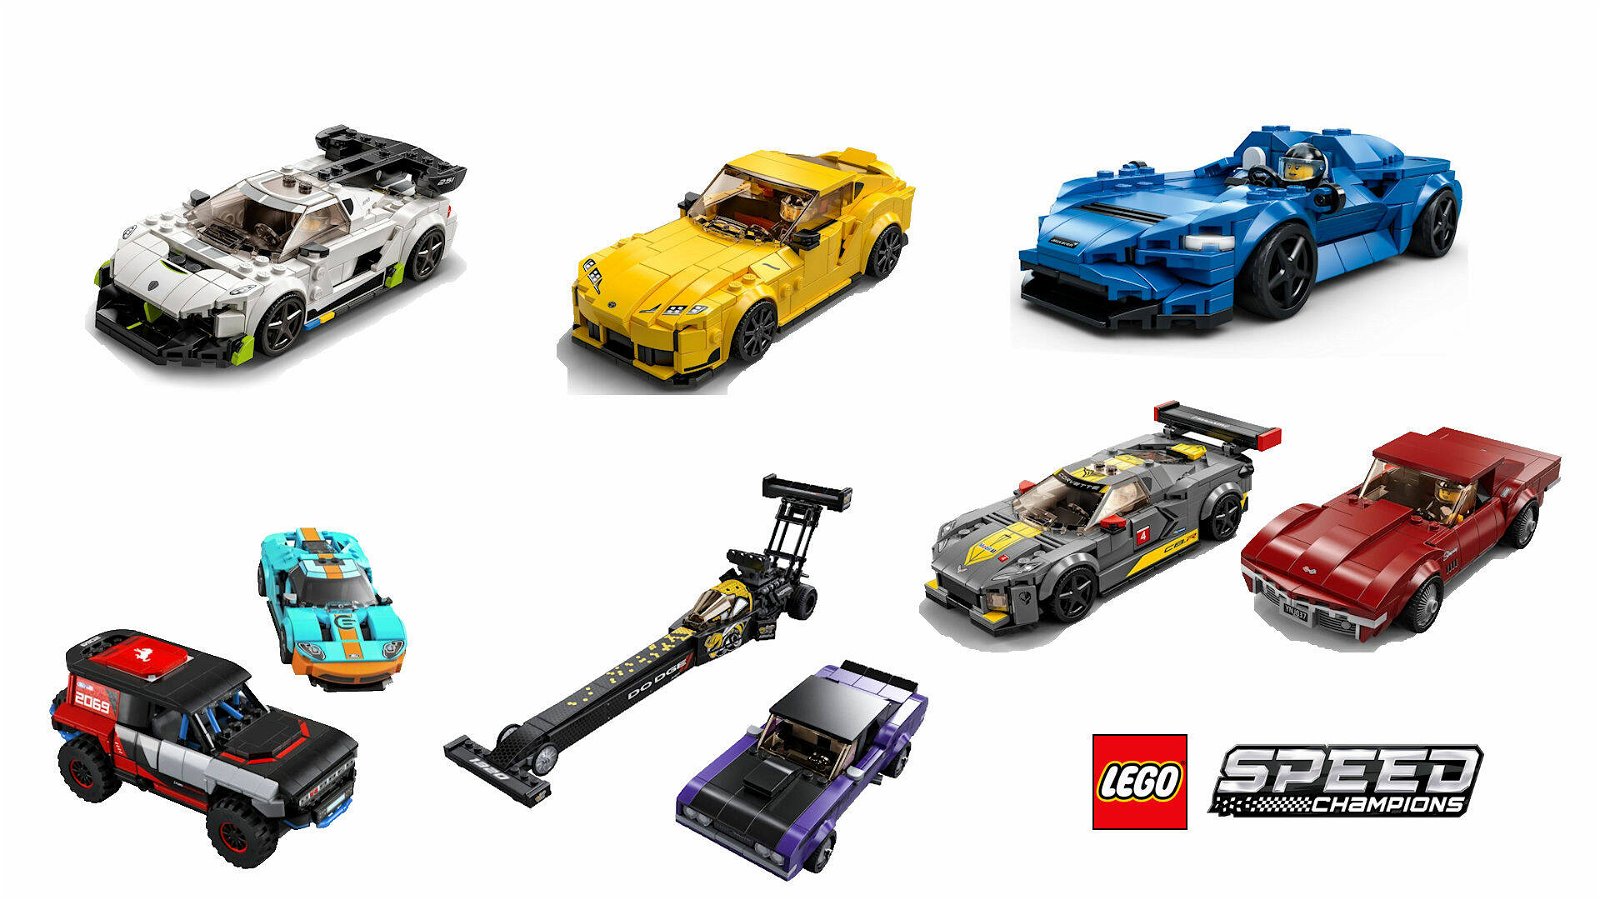 Immagine di LEGO Speed Champions 2021: ecco tutti i nuovi set!